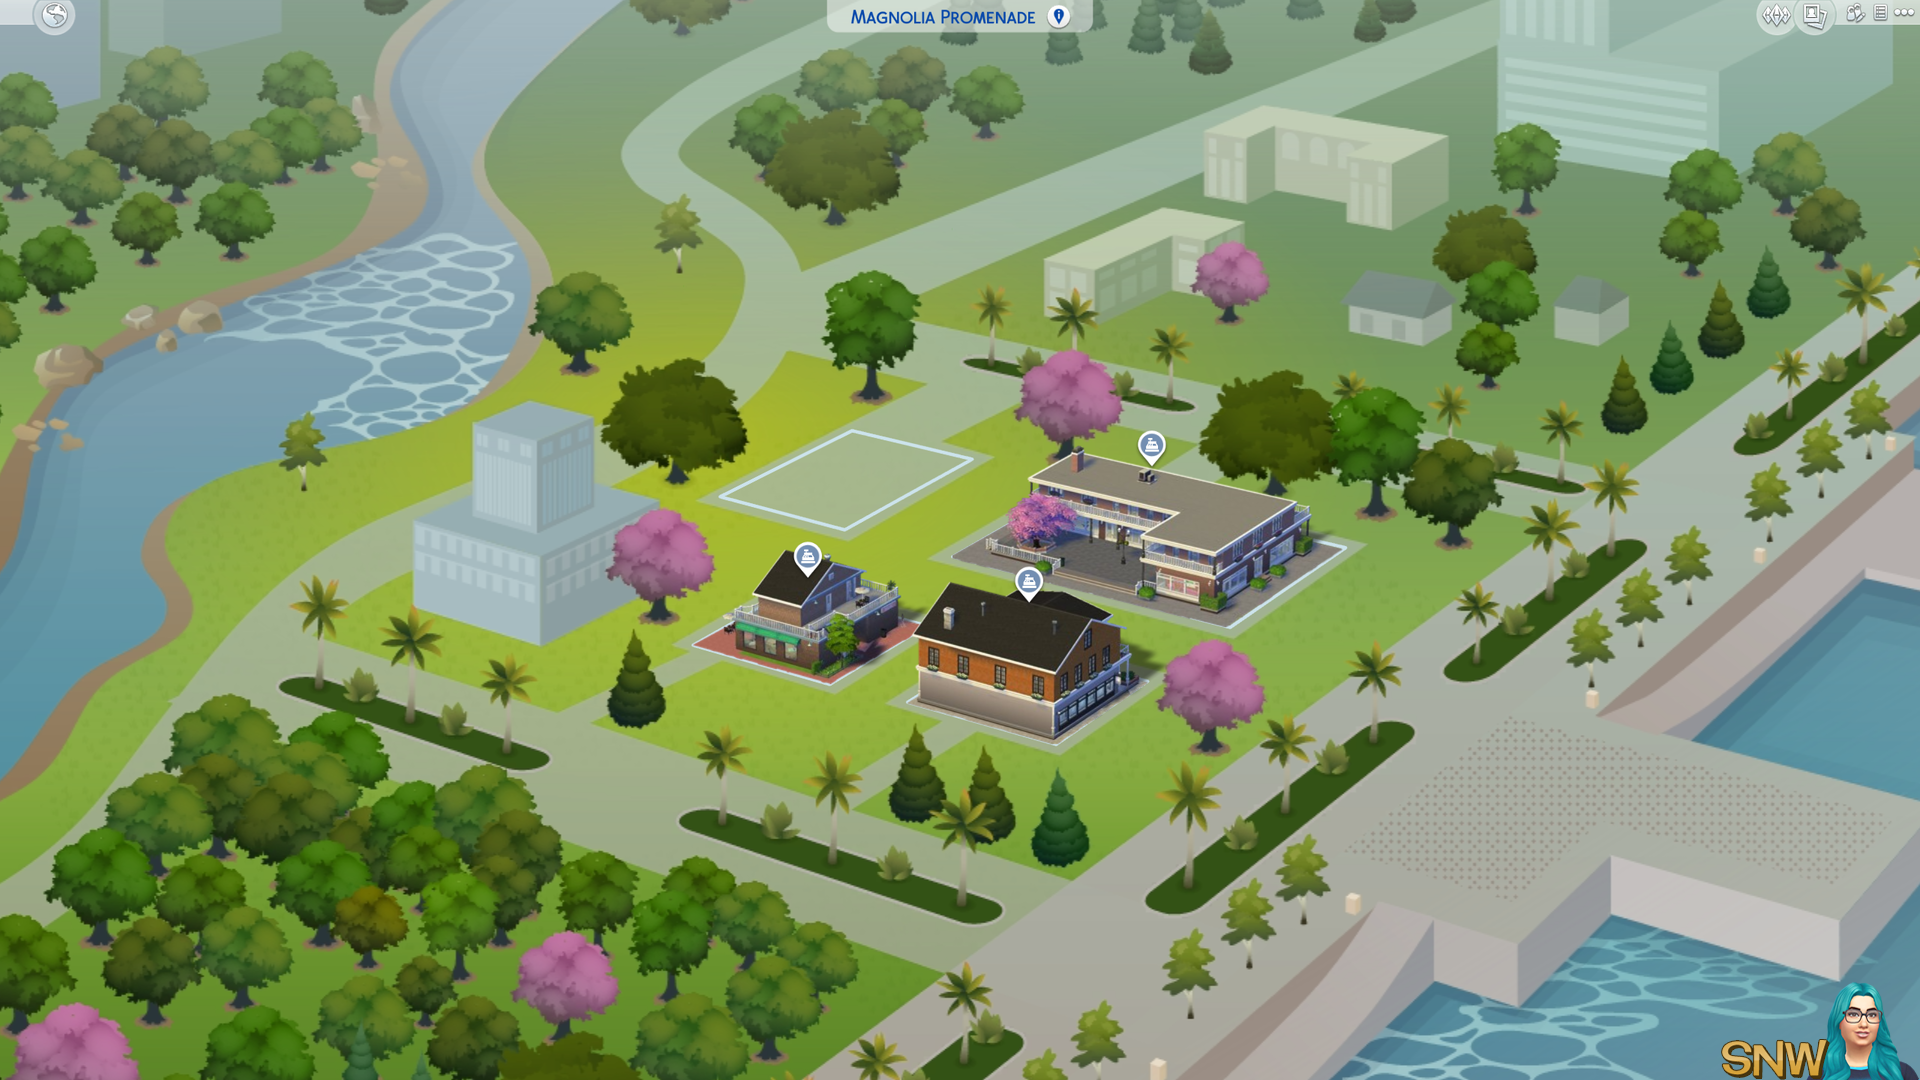 The Sims 4: Magnolia Promenade world